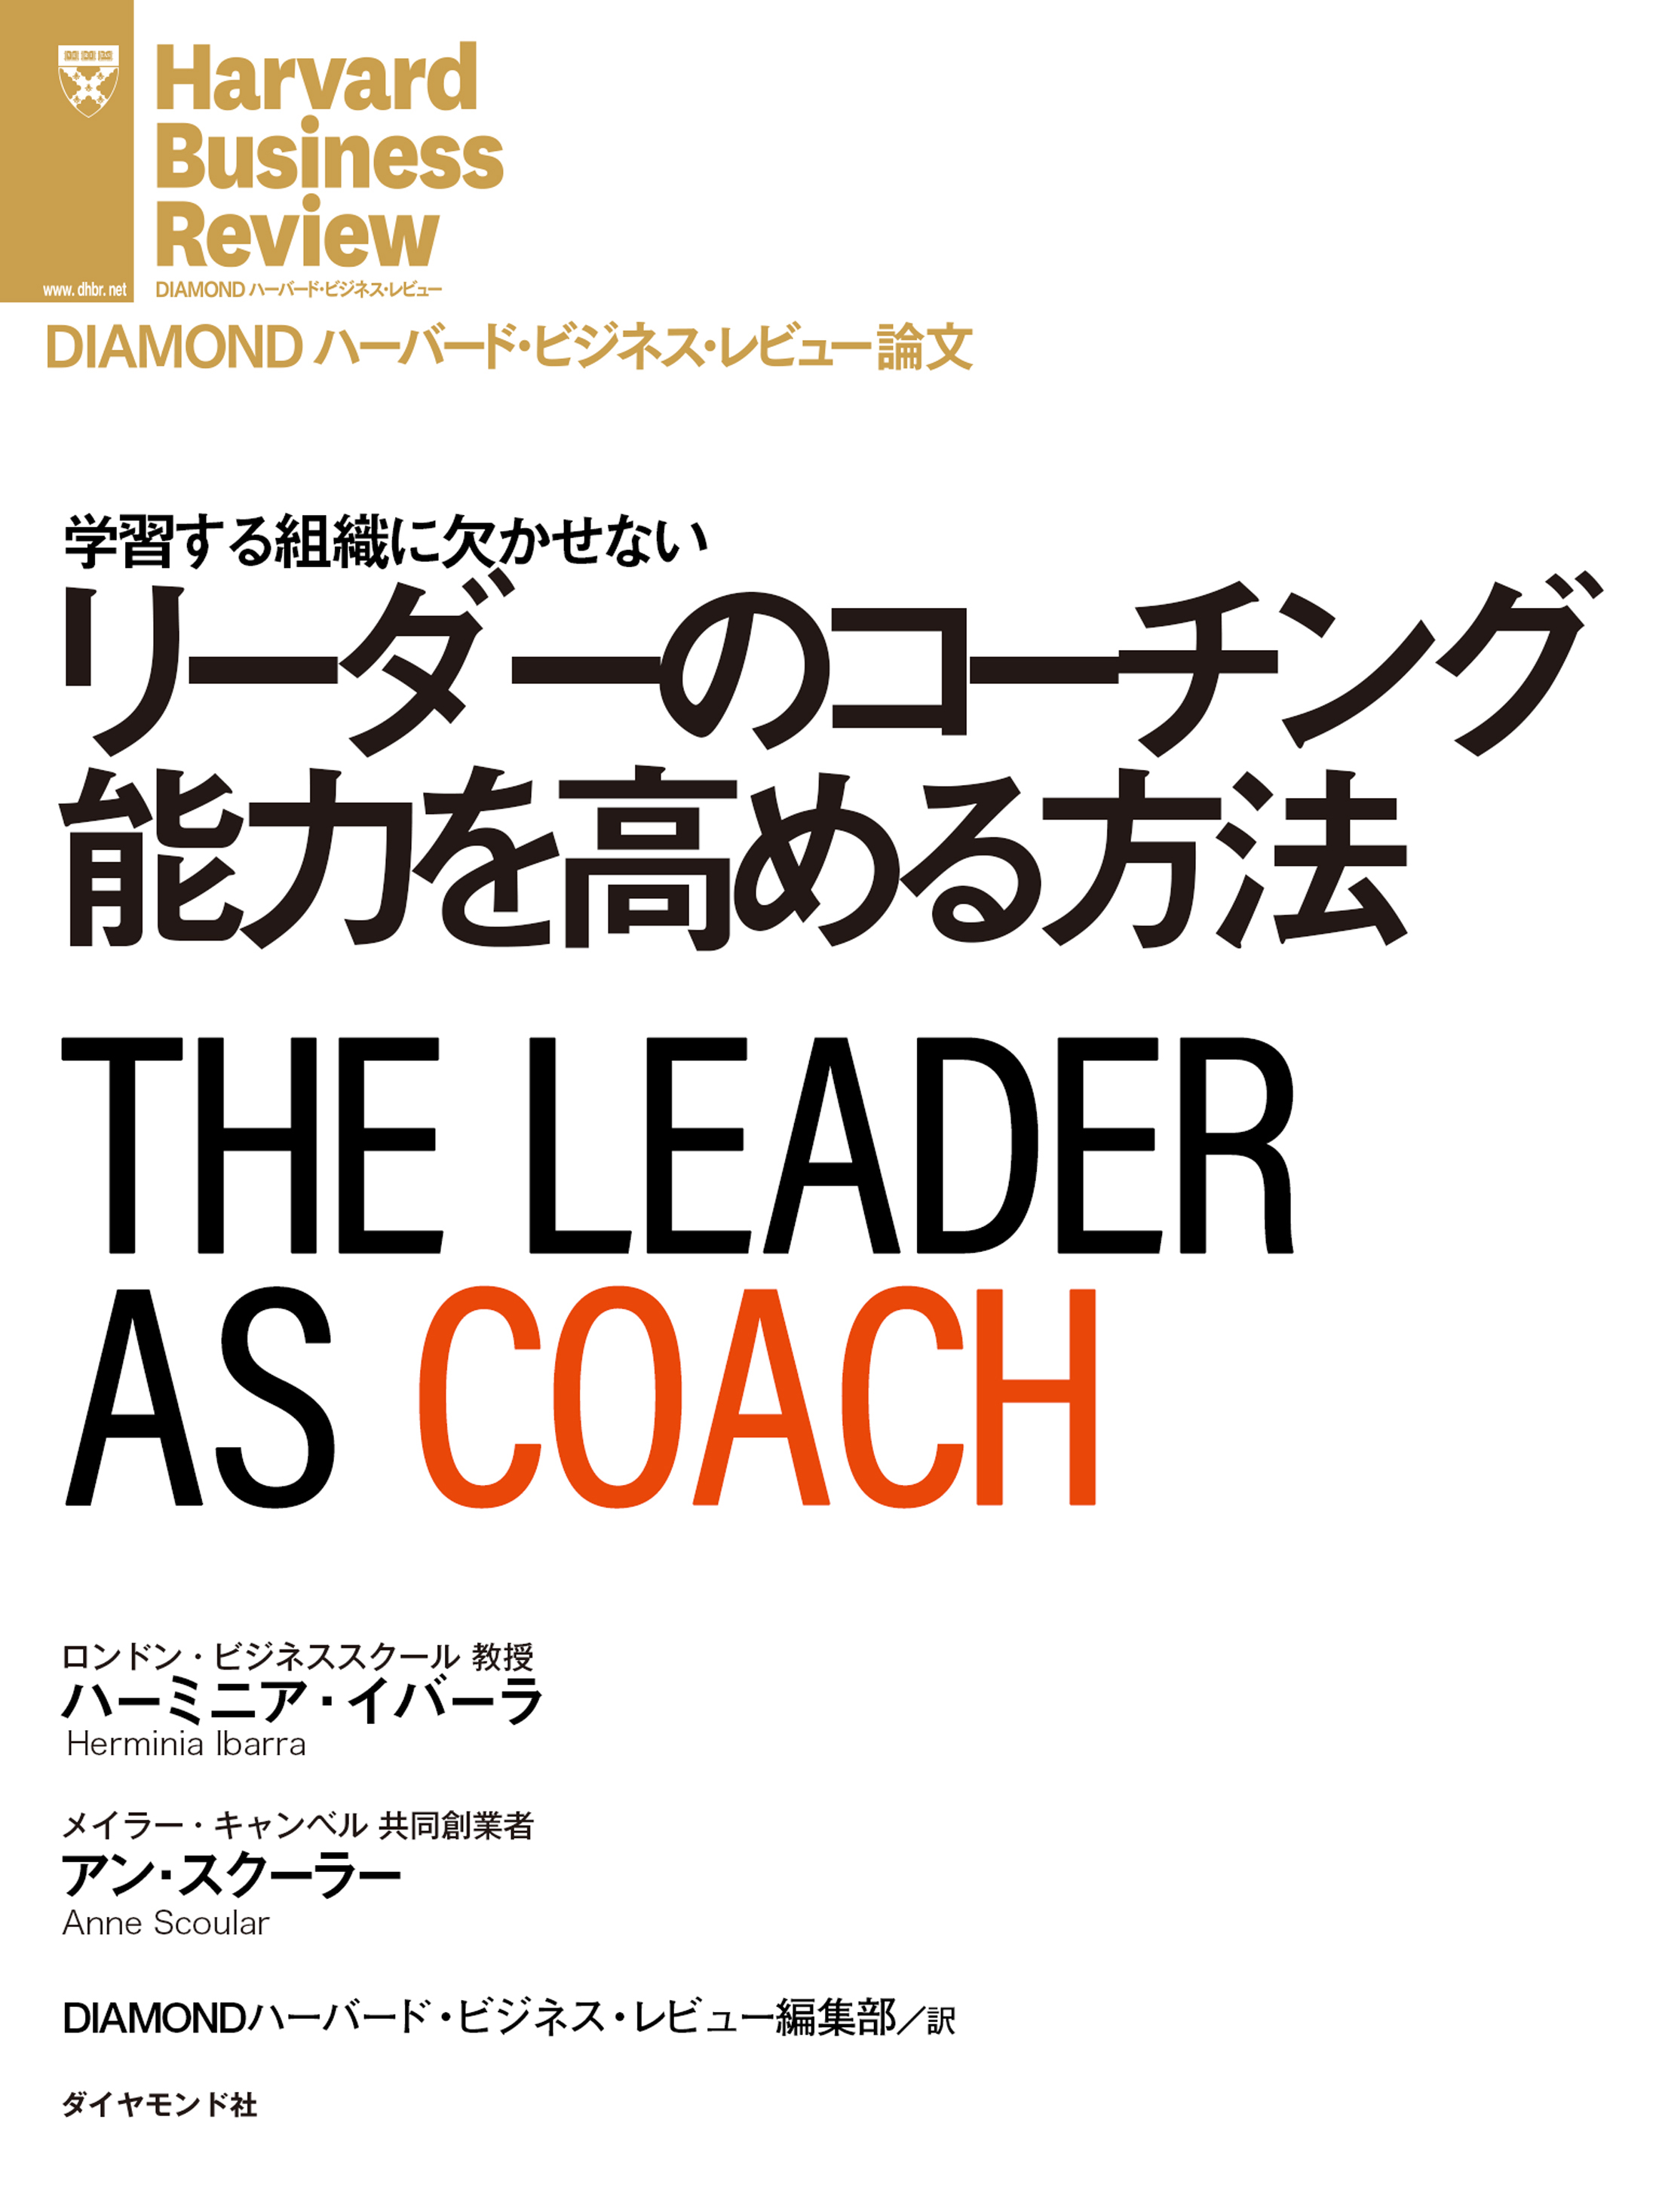 リーダーのコーチング能力を高める方法 | ブックライブ